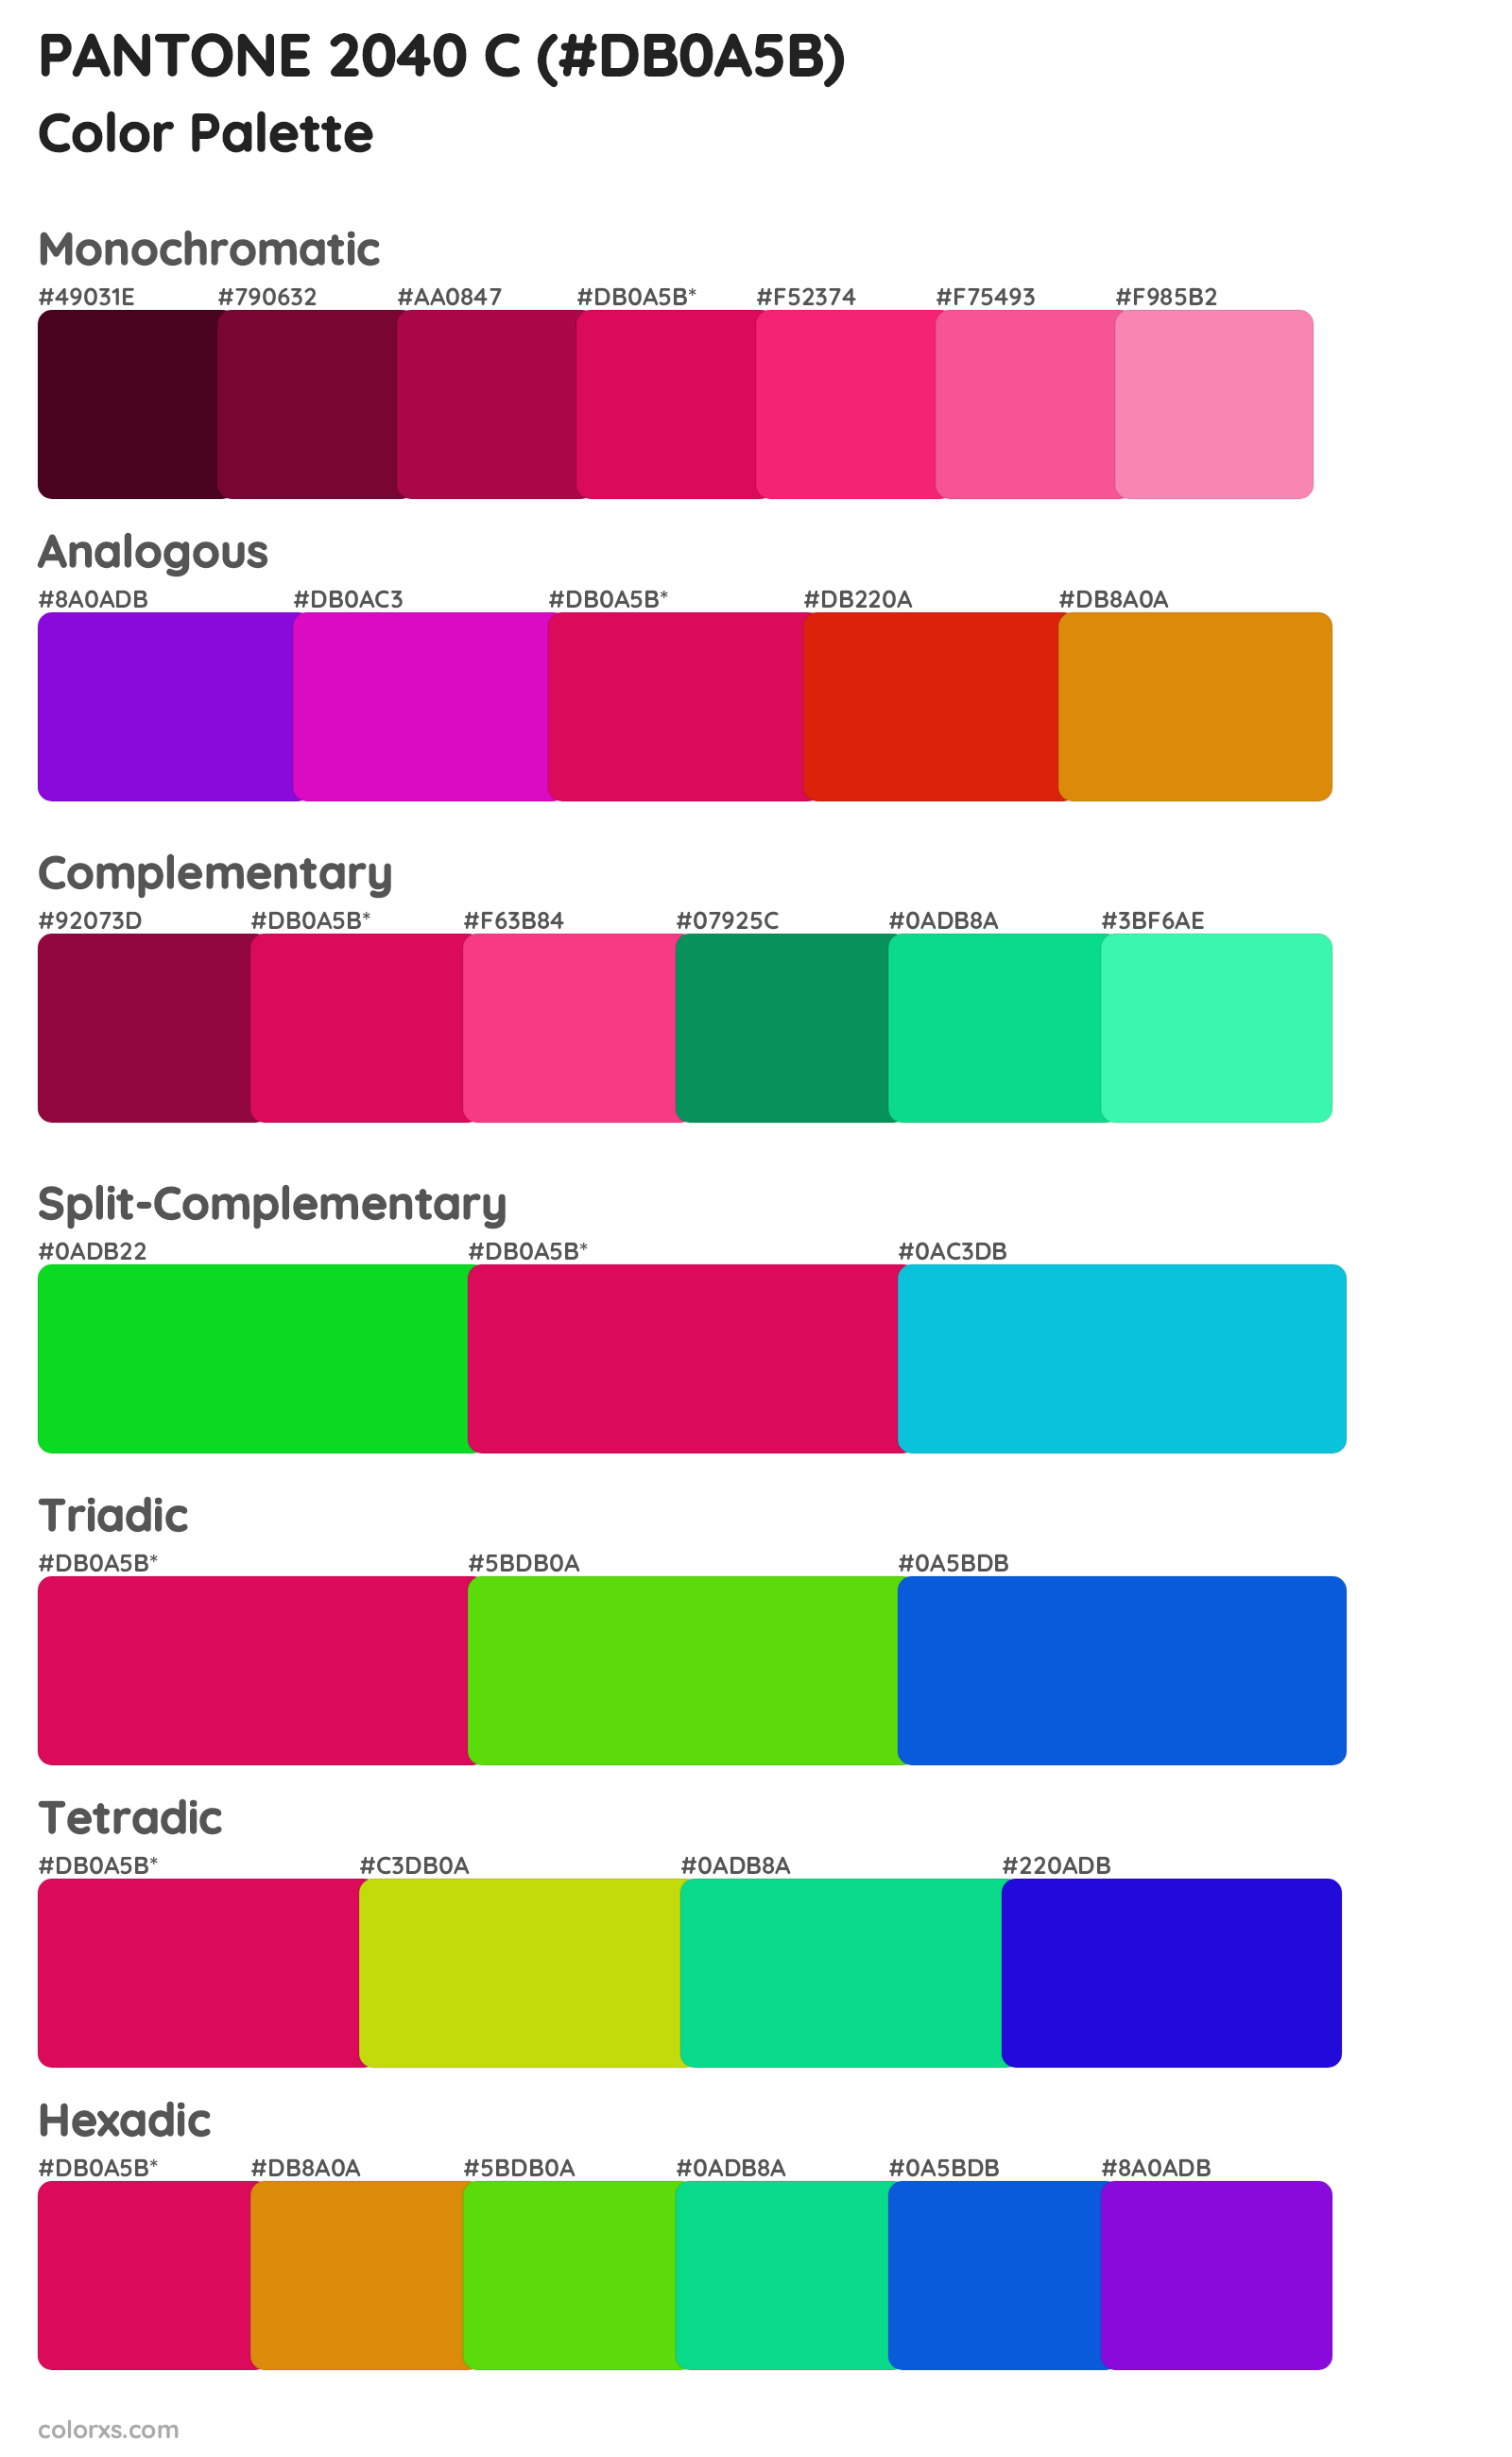 PANTONE 2040 C Color Scheme Palettes